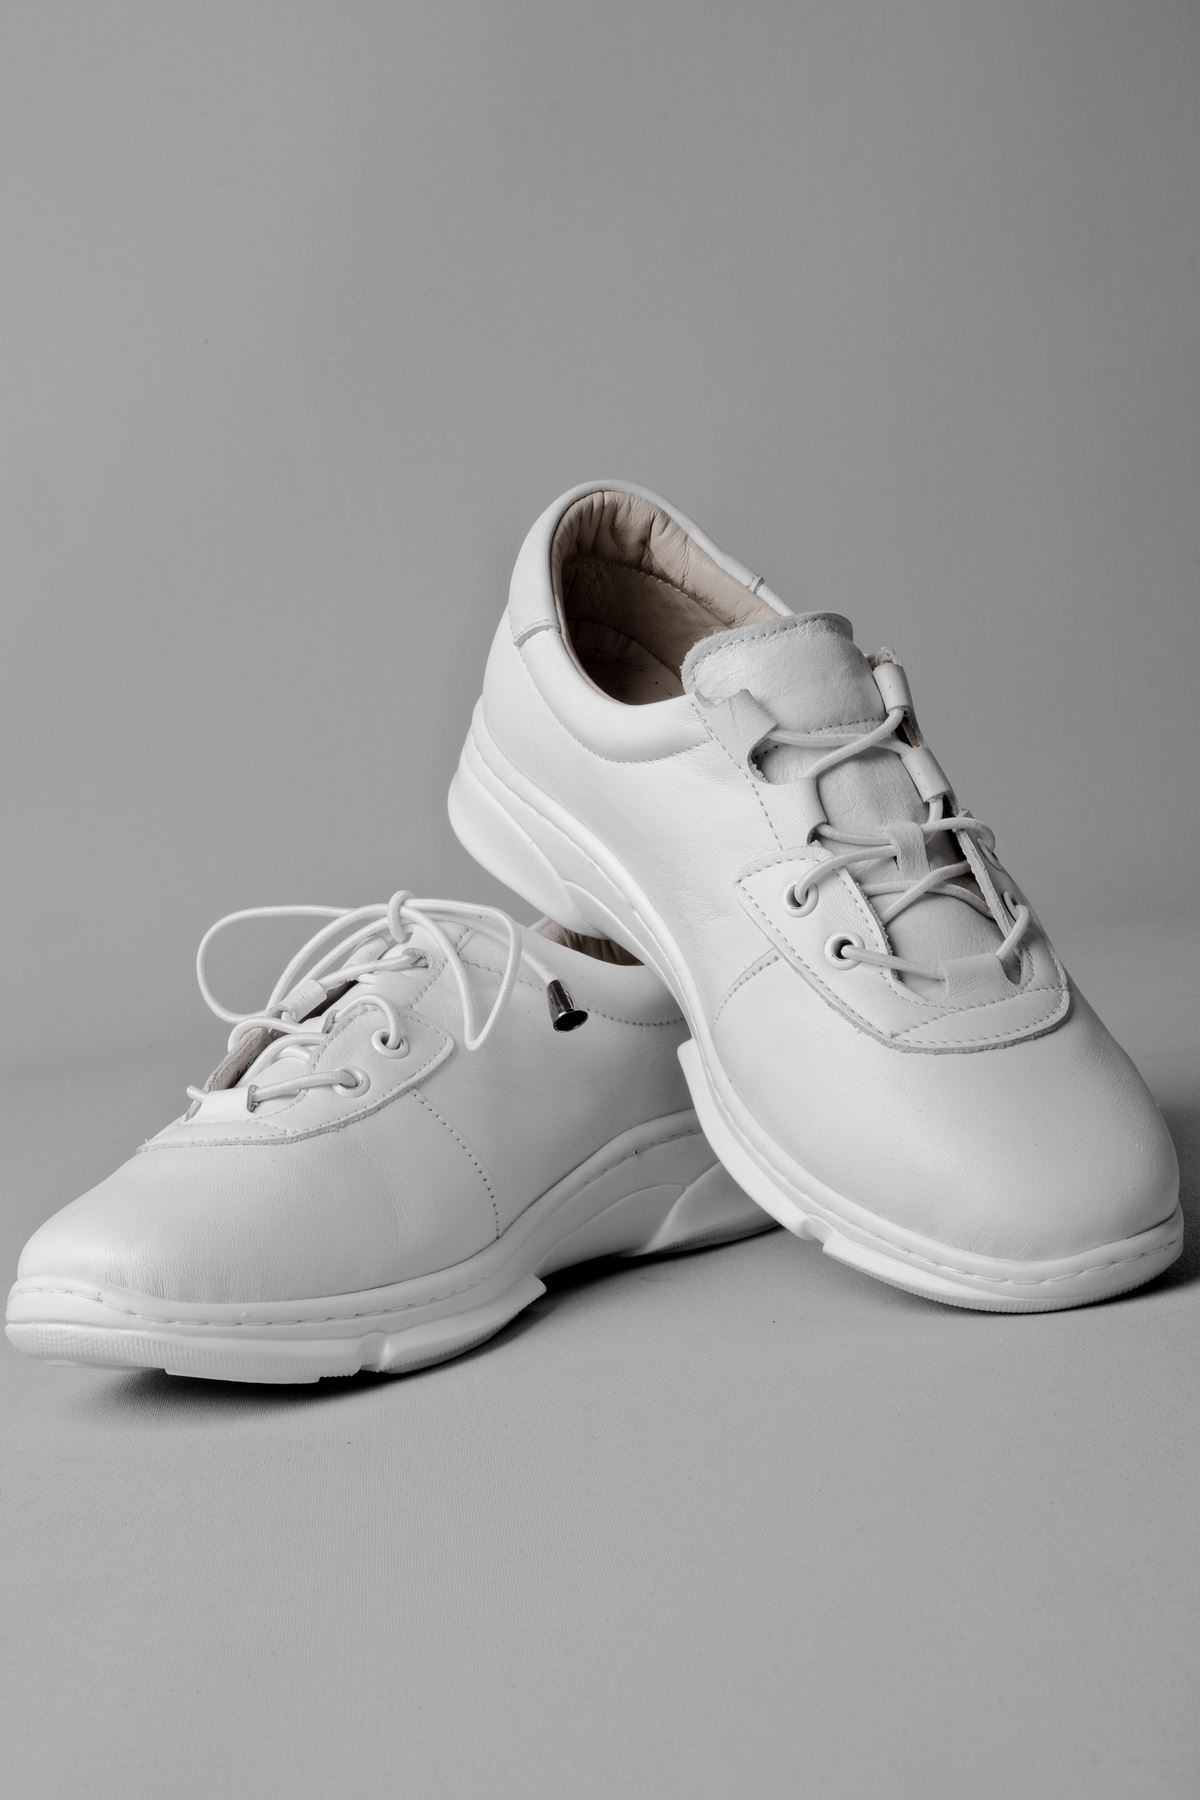 Milos Kadın Hakiki Deri Günlük Spor Ayakkabı-beyaz